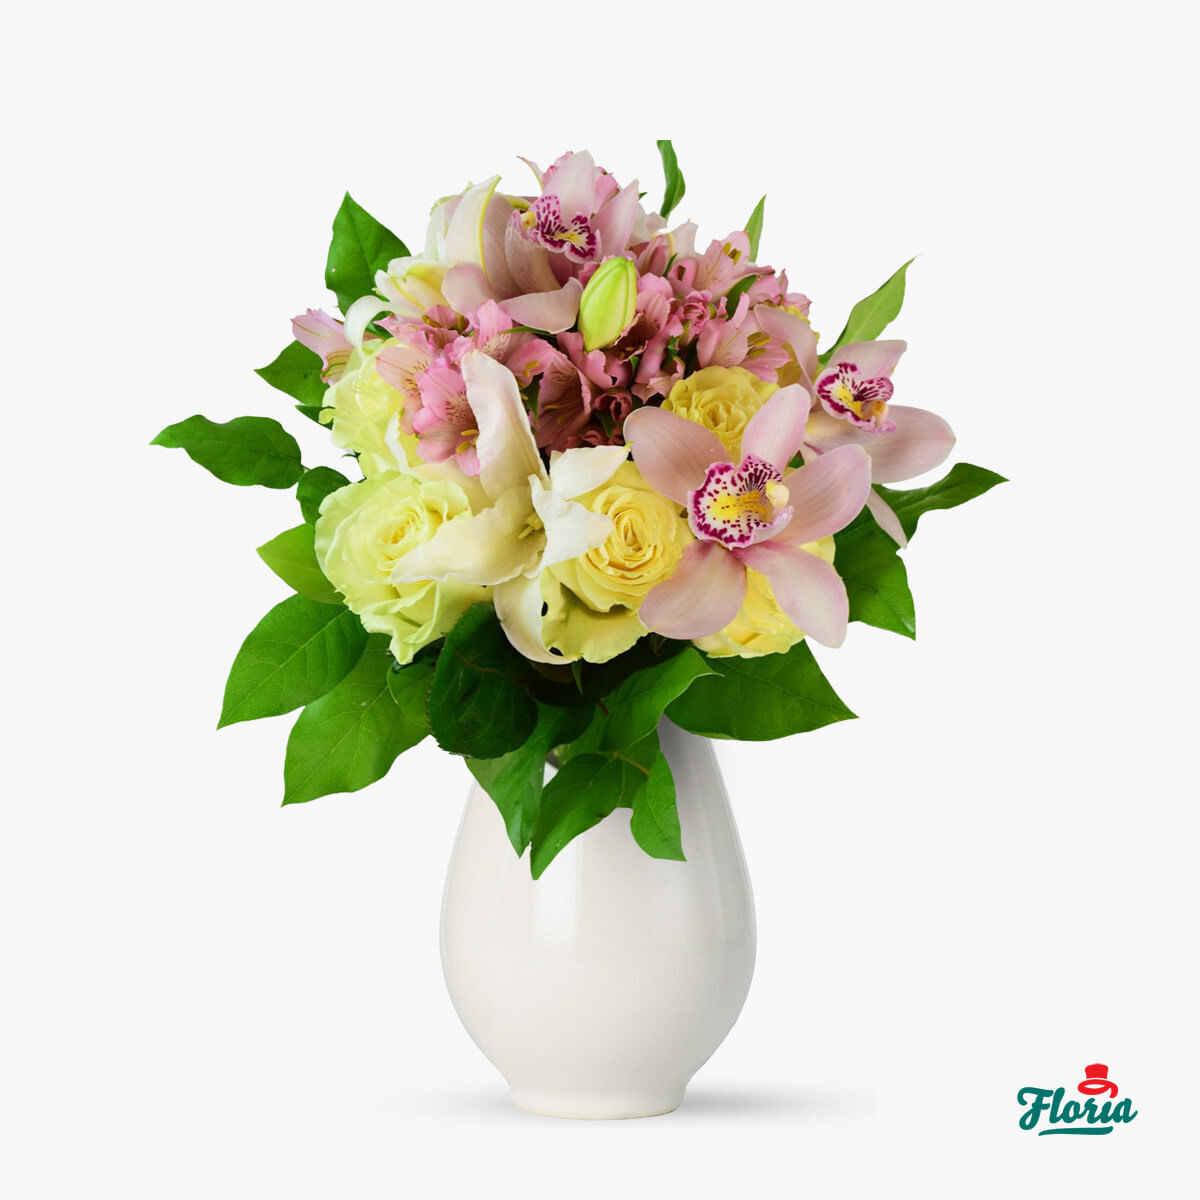 Buchet de flori – Eleganta toamnei – premium